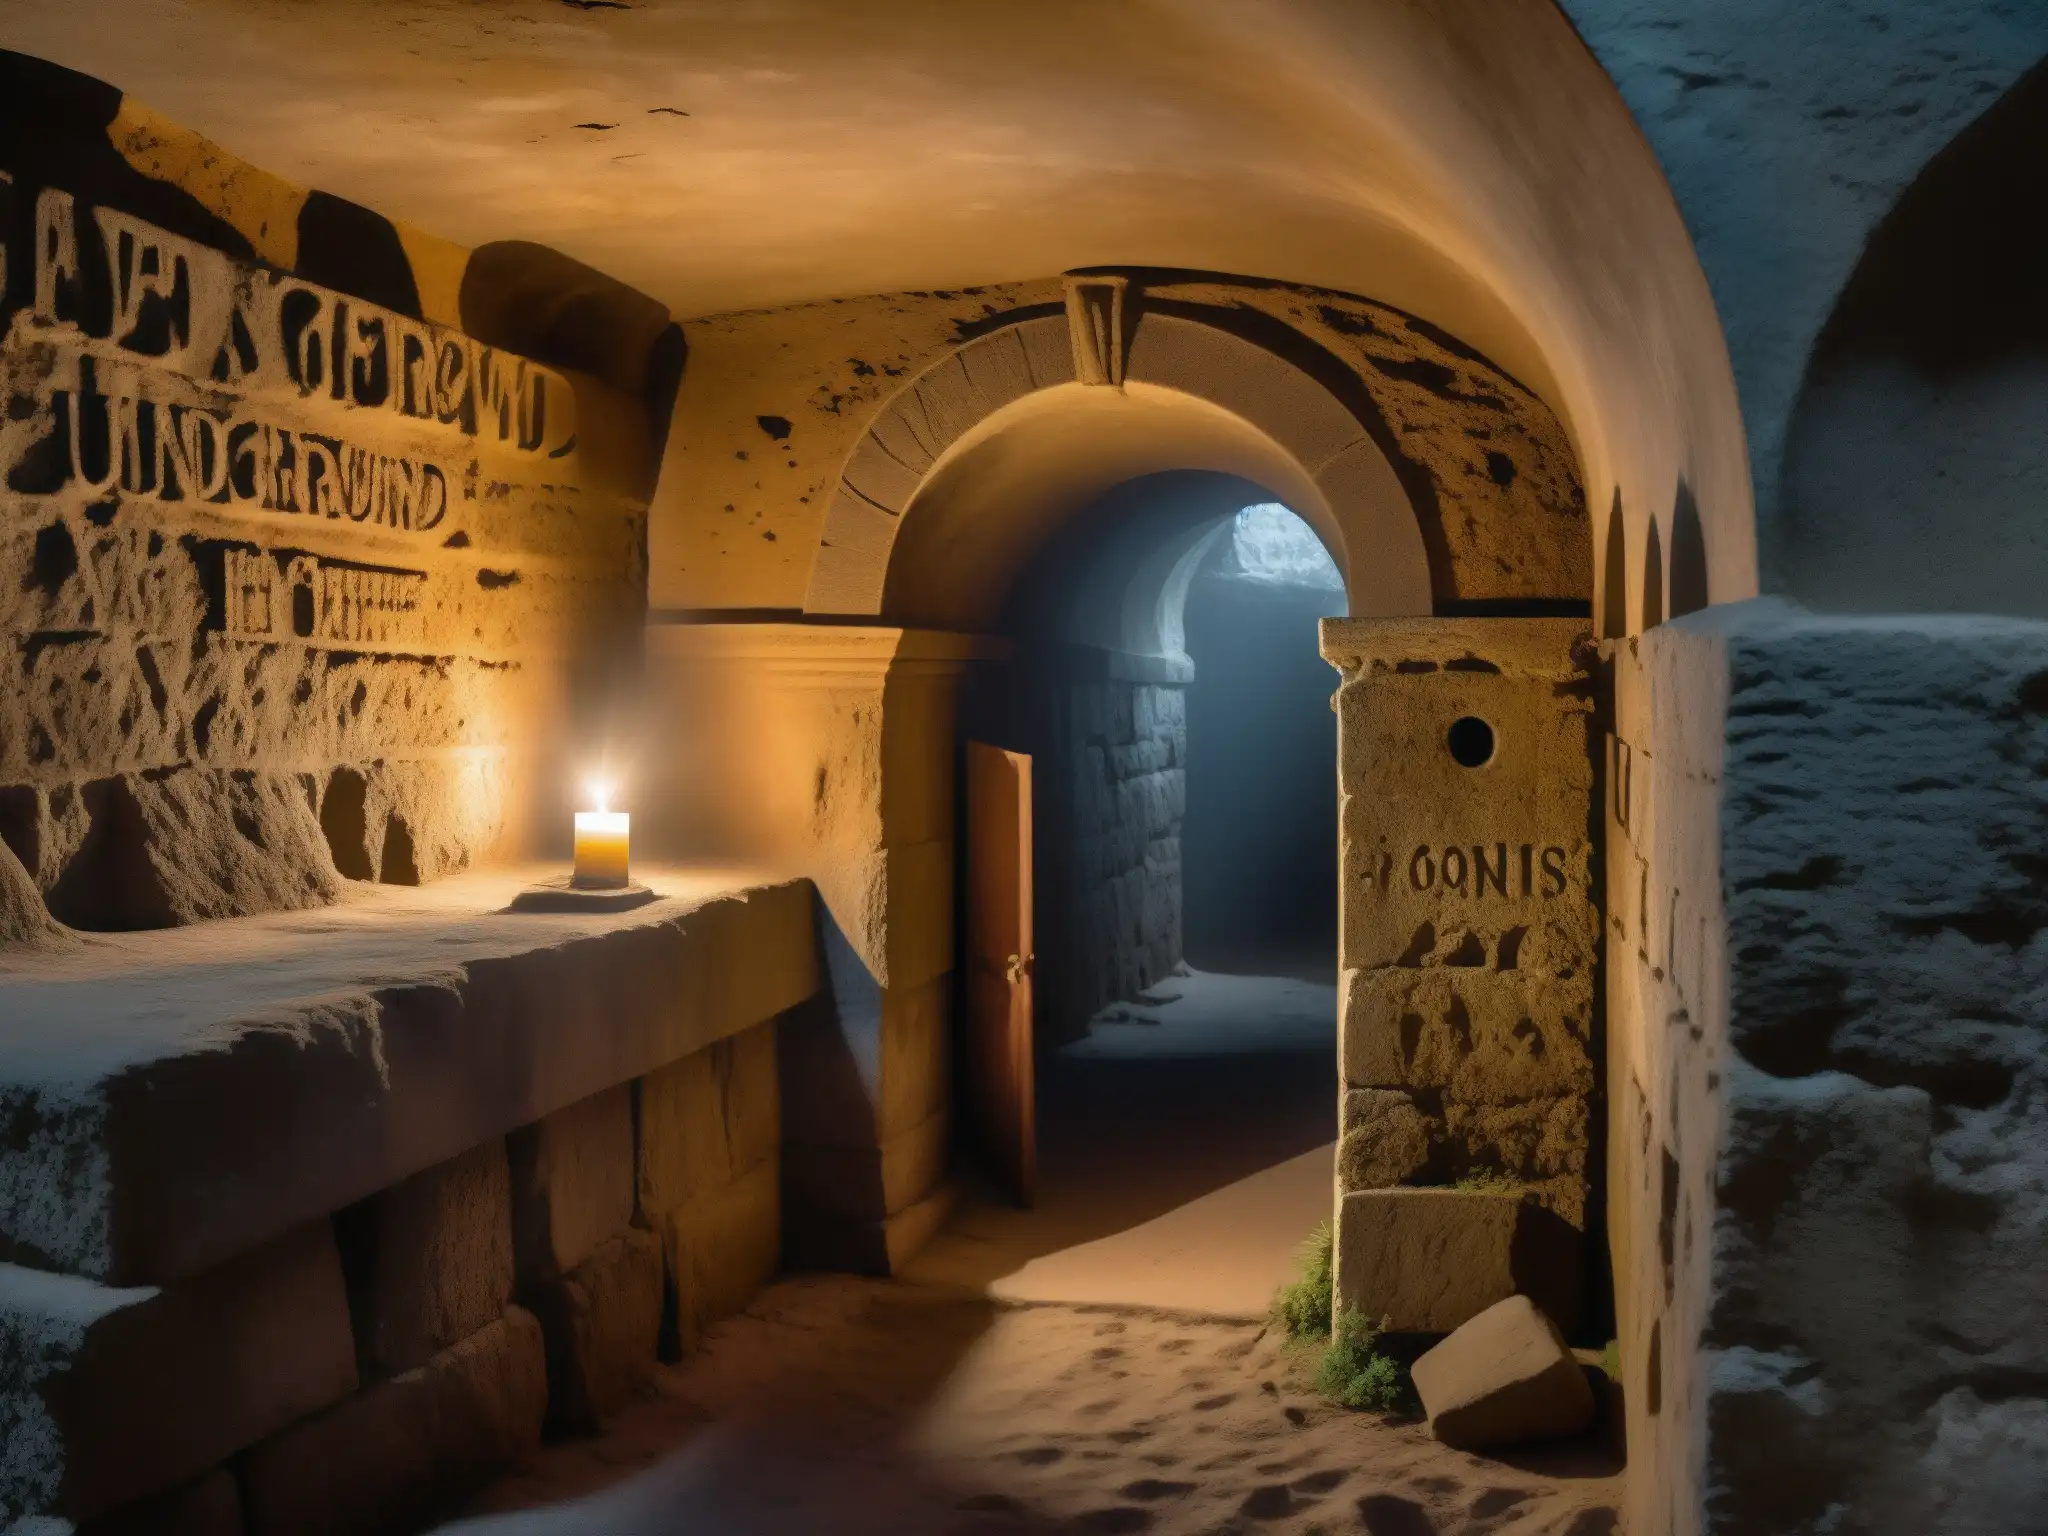 Una cripta subterránea lúgubre, con tumbas polvorientas y luces de vela titilantes